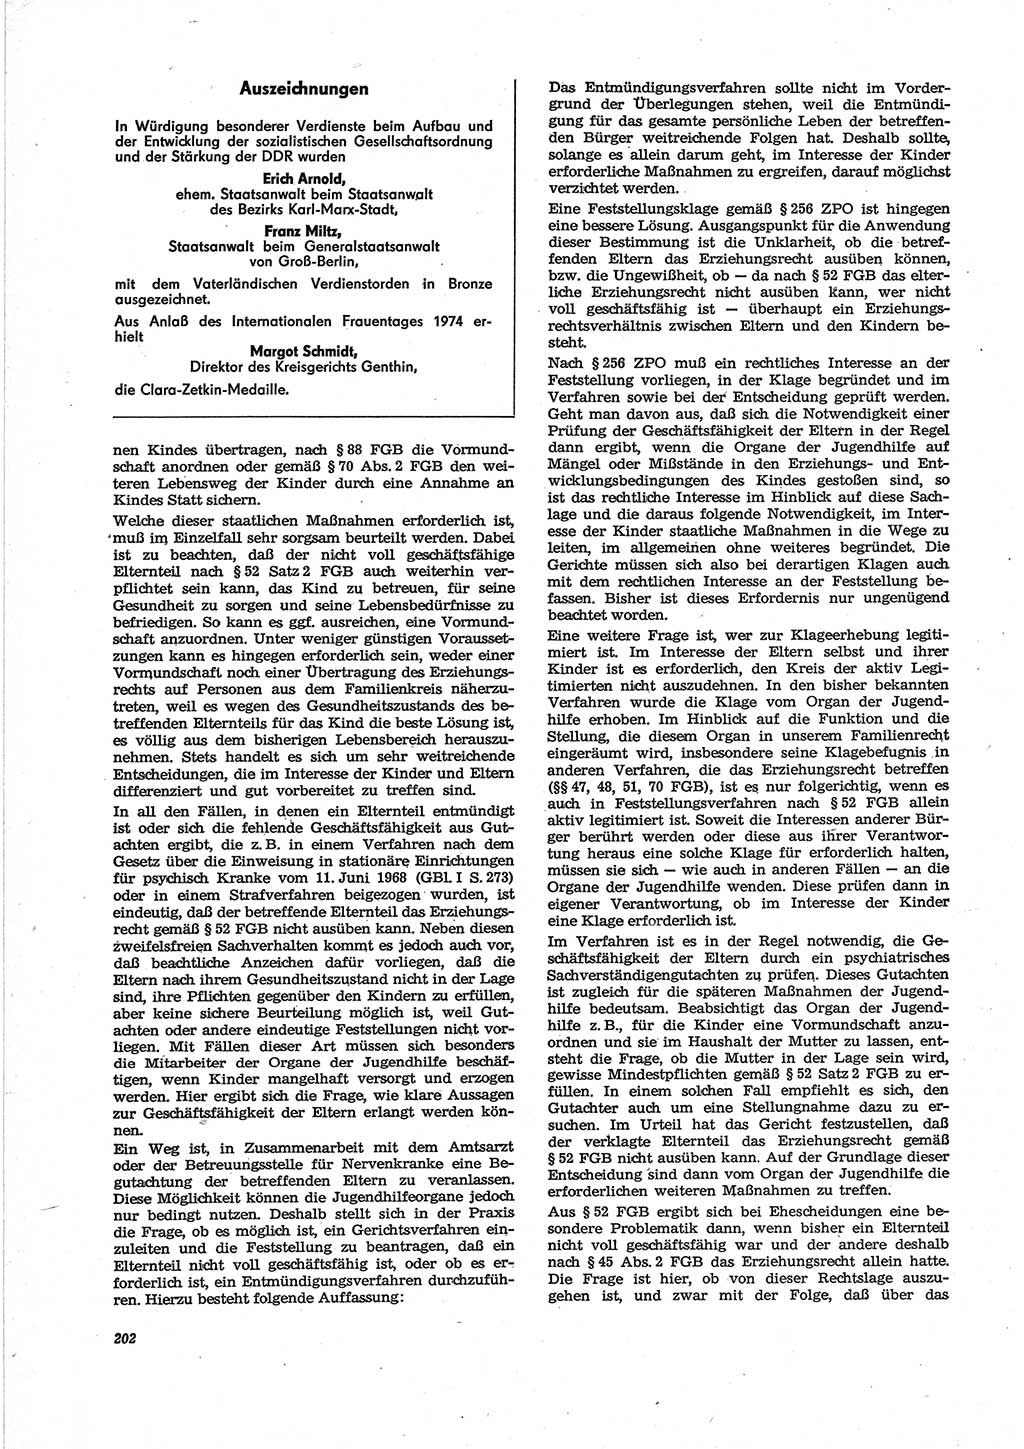 Neue Justiz (NJ), Zeitschrift für Recht und Rechtswissenschaft [Deutsche Demokratische Republik (DDR)], 28. Jahrgang 1974, Seite 202 (NJ DDR 1974, S. 202)